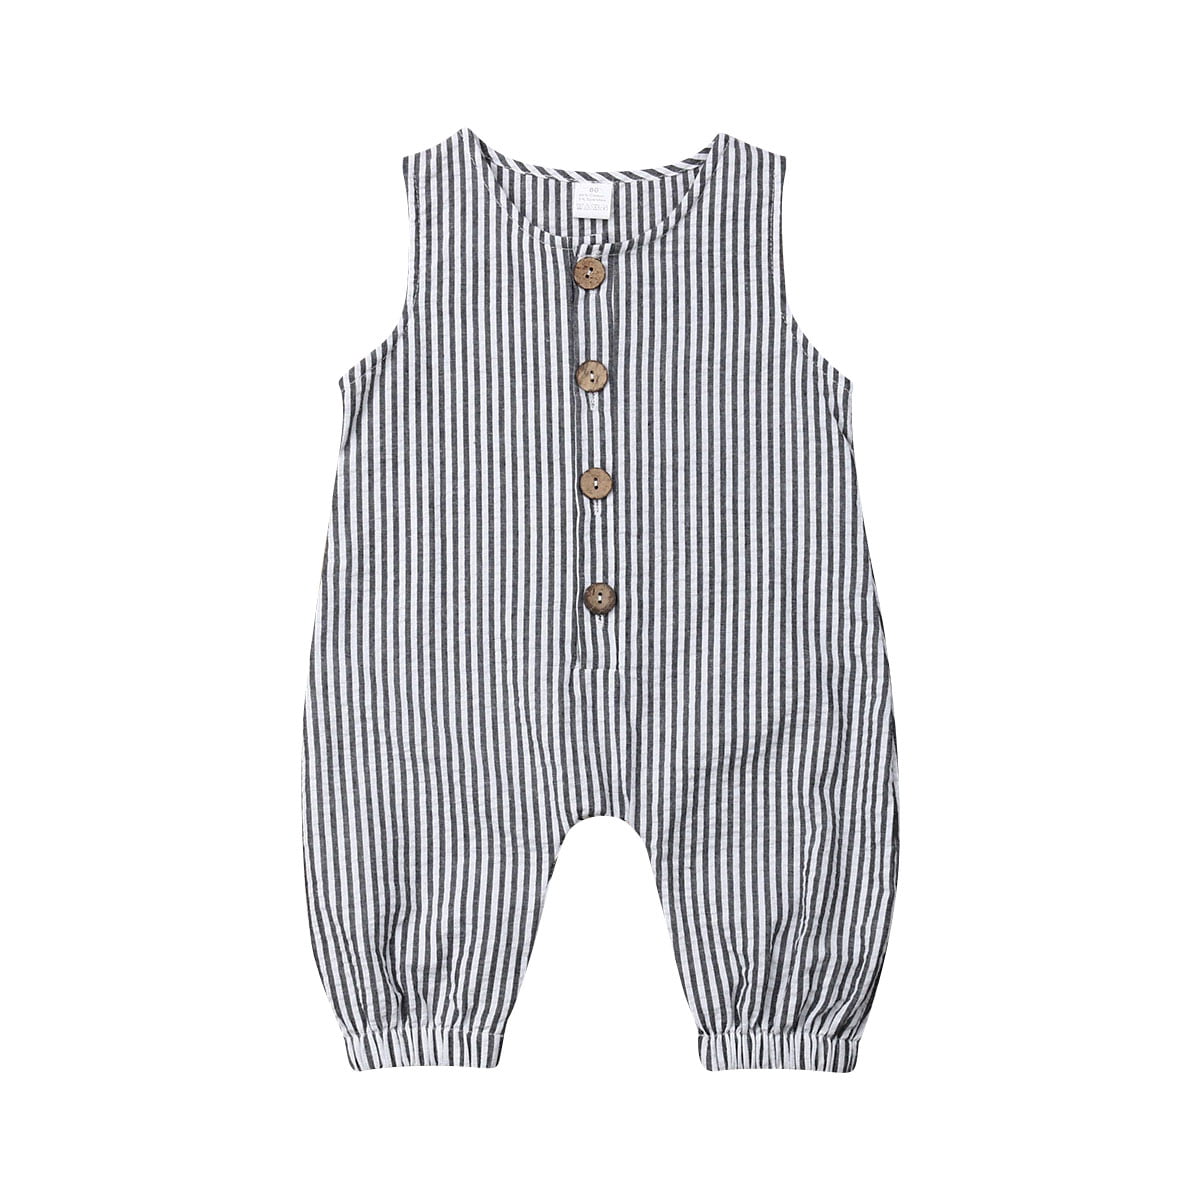 Newborn Infant Baby Boy Striped Clothes Bodysuit Romper Jumpsuit Playsuit Outfit 